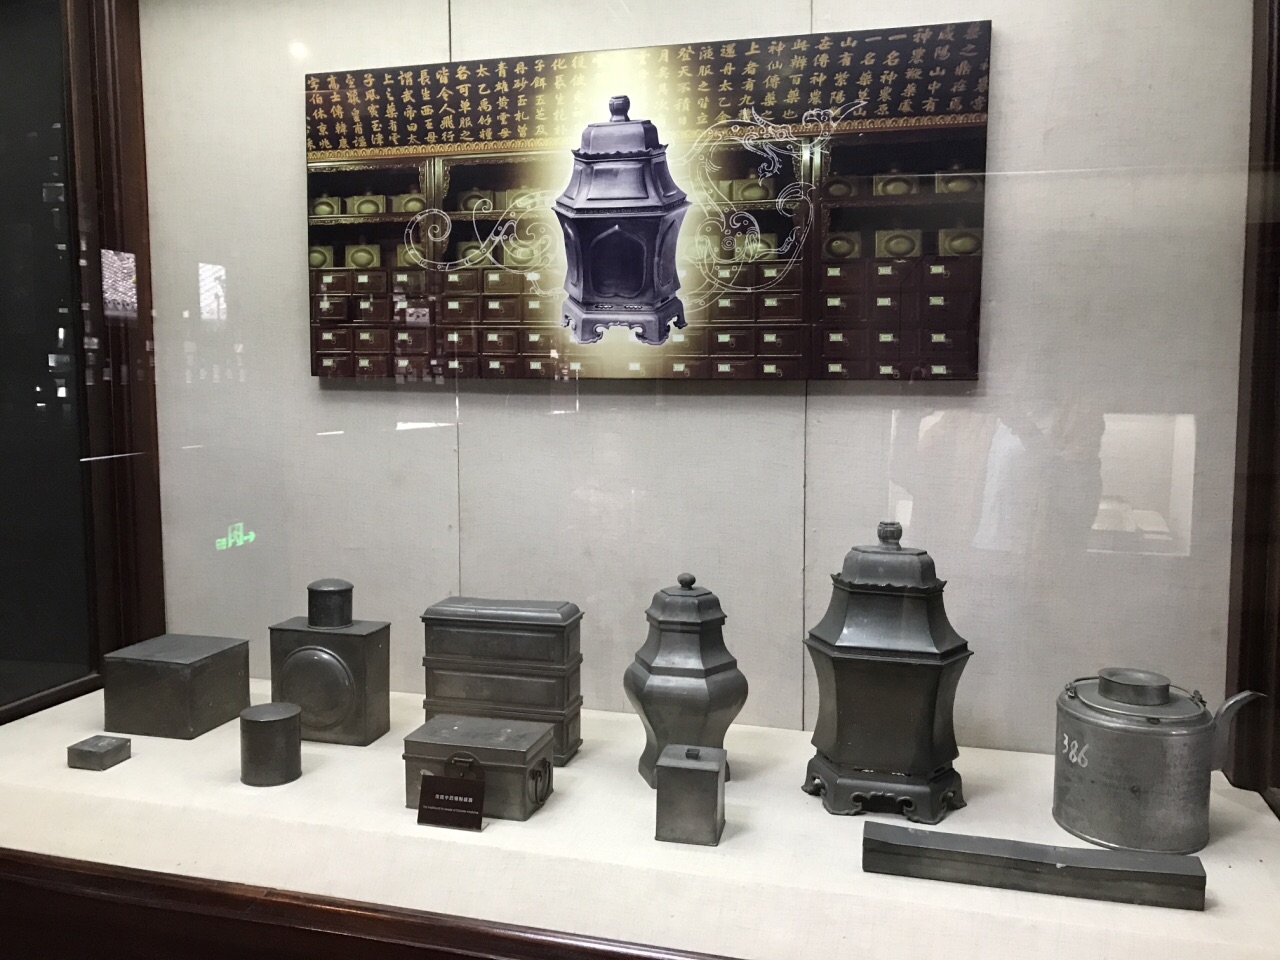 2019胡庆余堂中药博物馆游玩攻略,对于喜欢看博物馆的